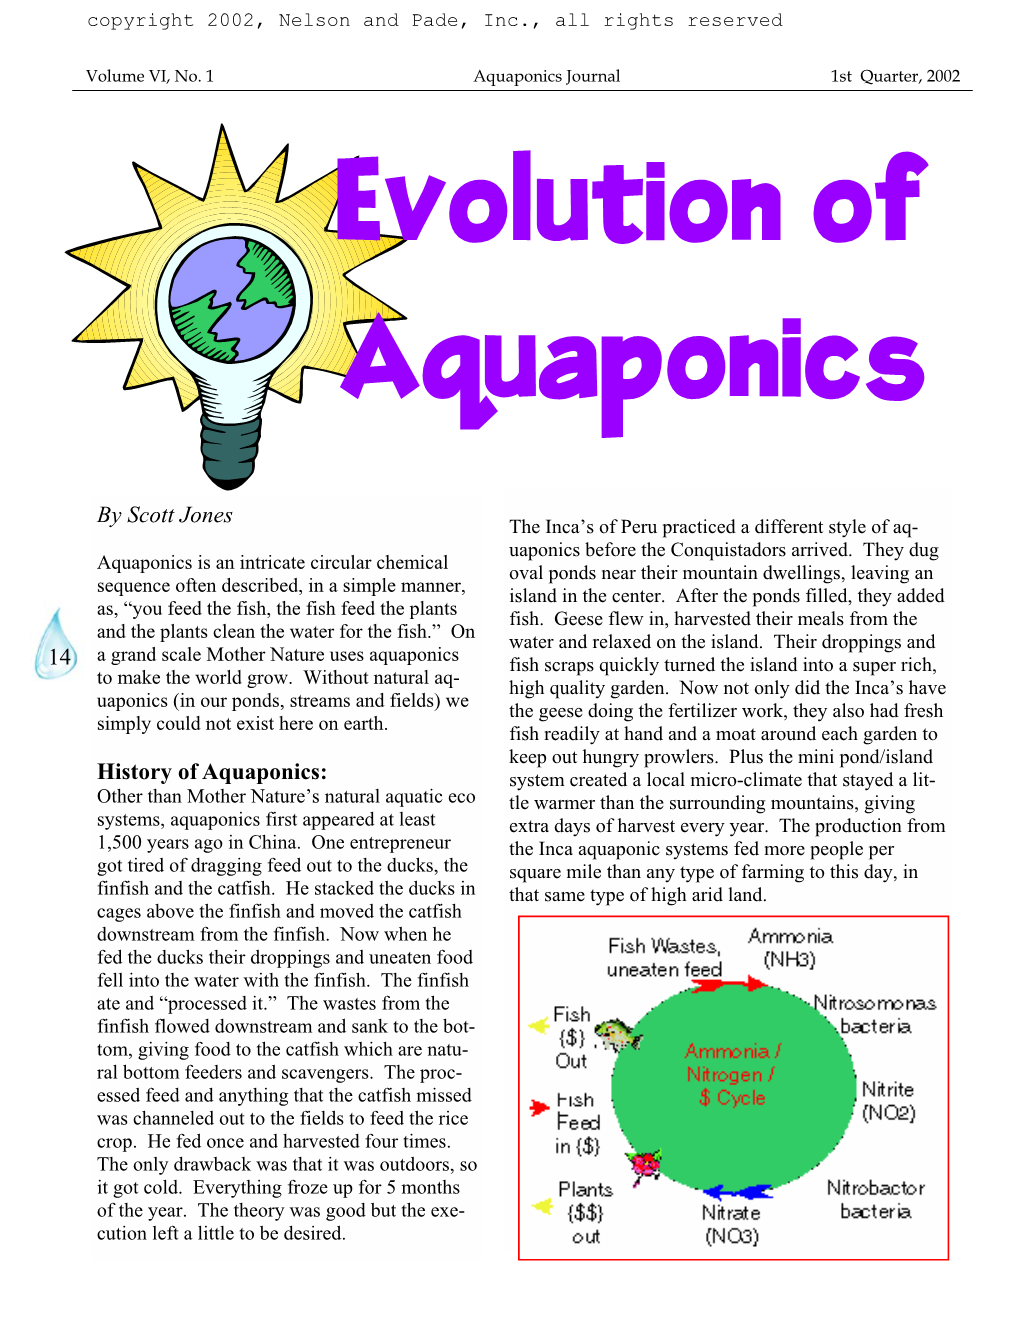 Evolution of Aquaponics